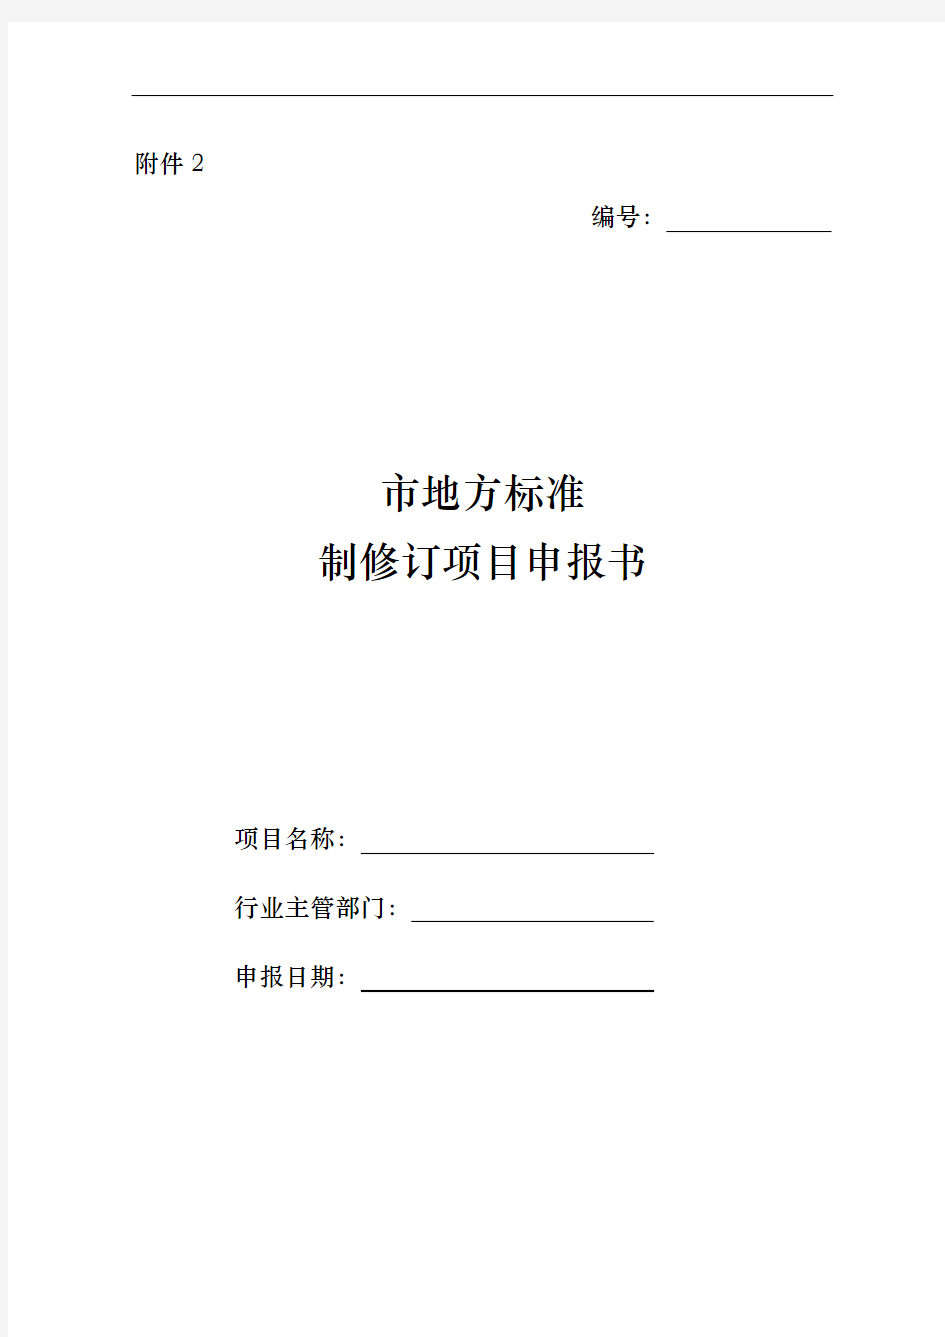 北京地方标准制修订项目申报书填写说明